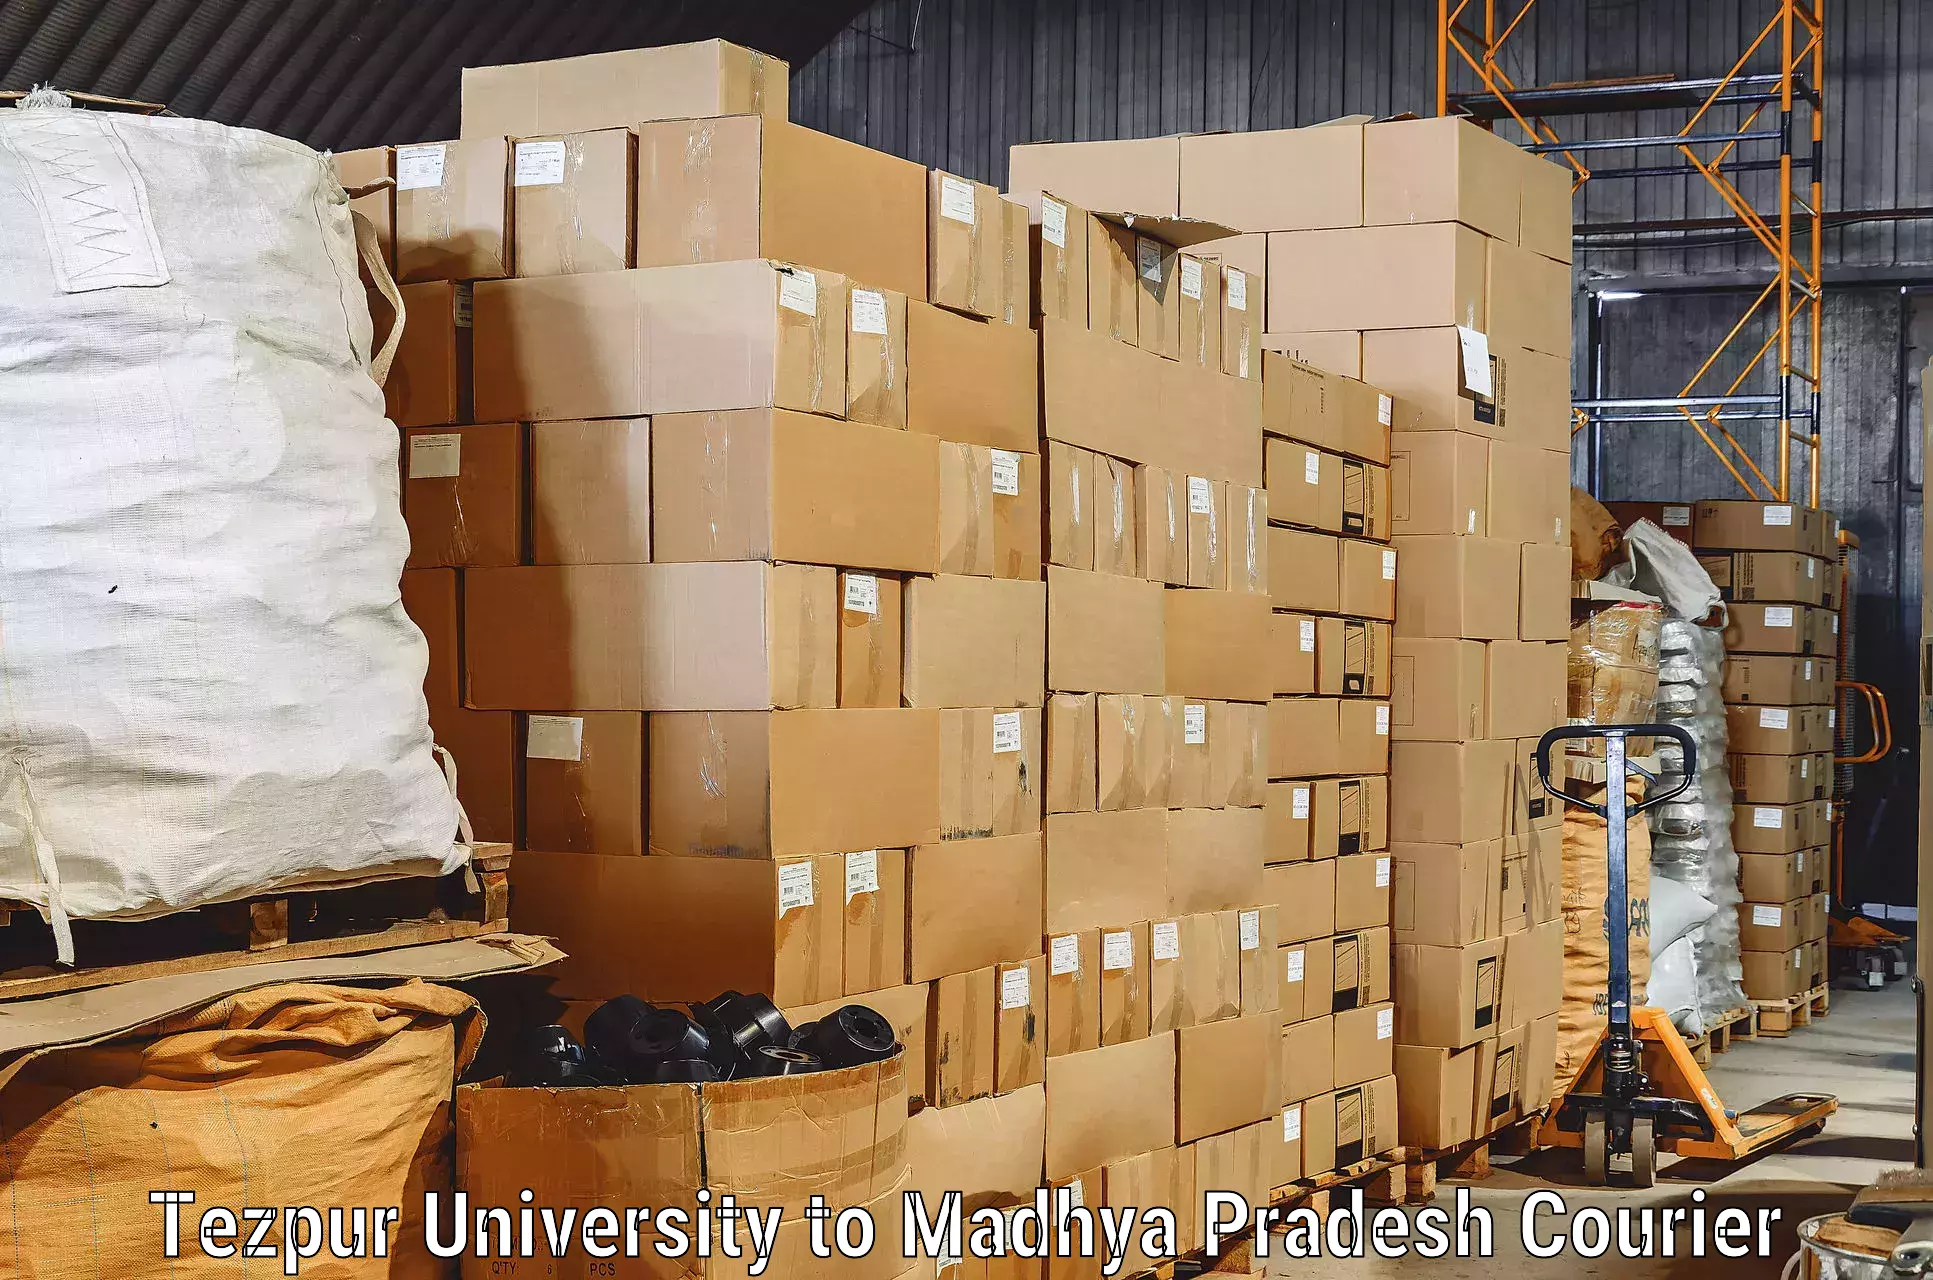 Household goods transport service in Tezpur University to Badnagar